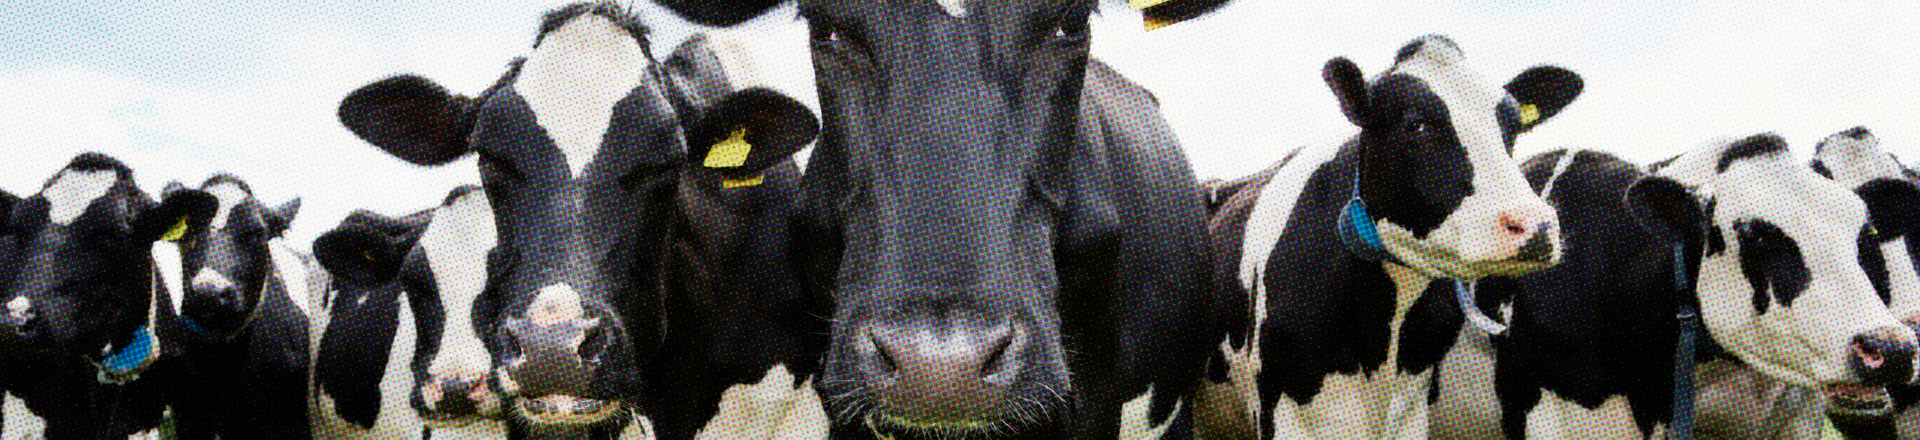 FOTO CARROUSSEL COWS 1920X440